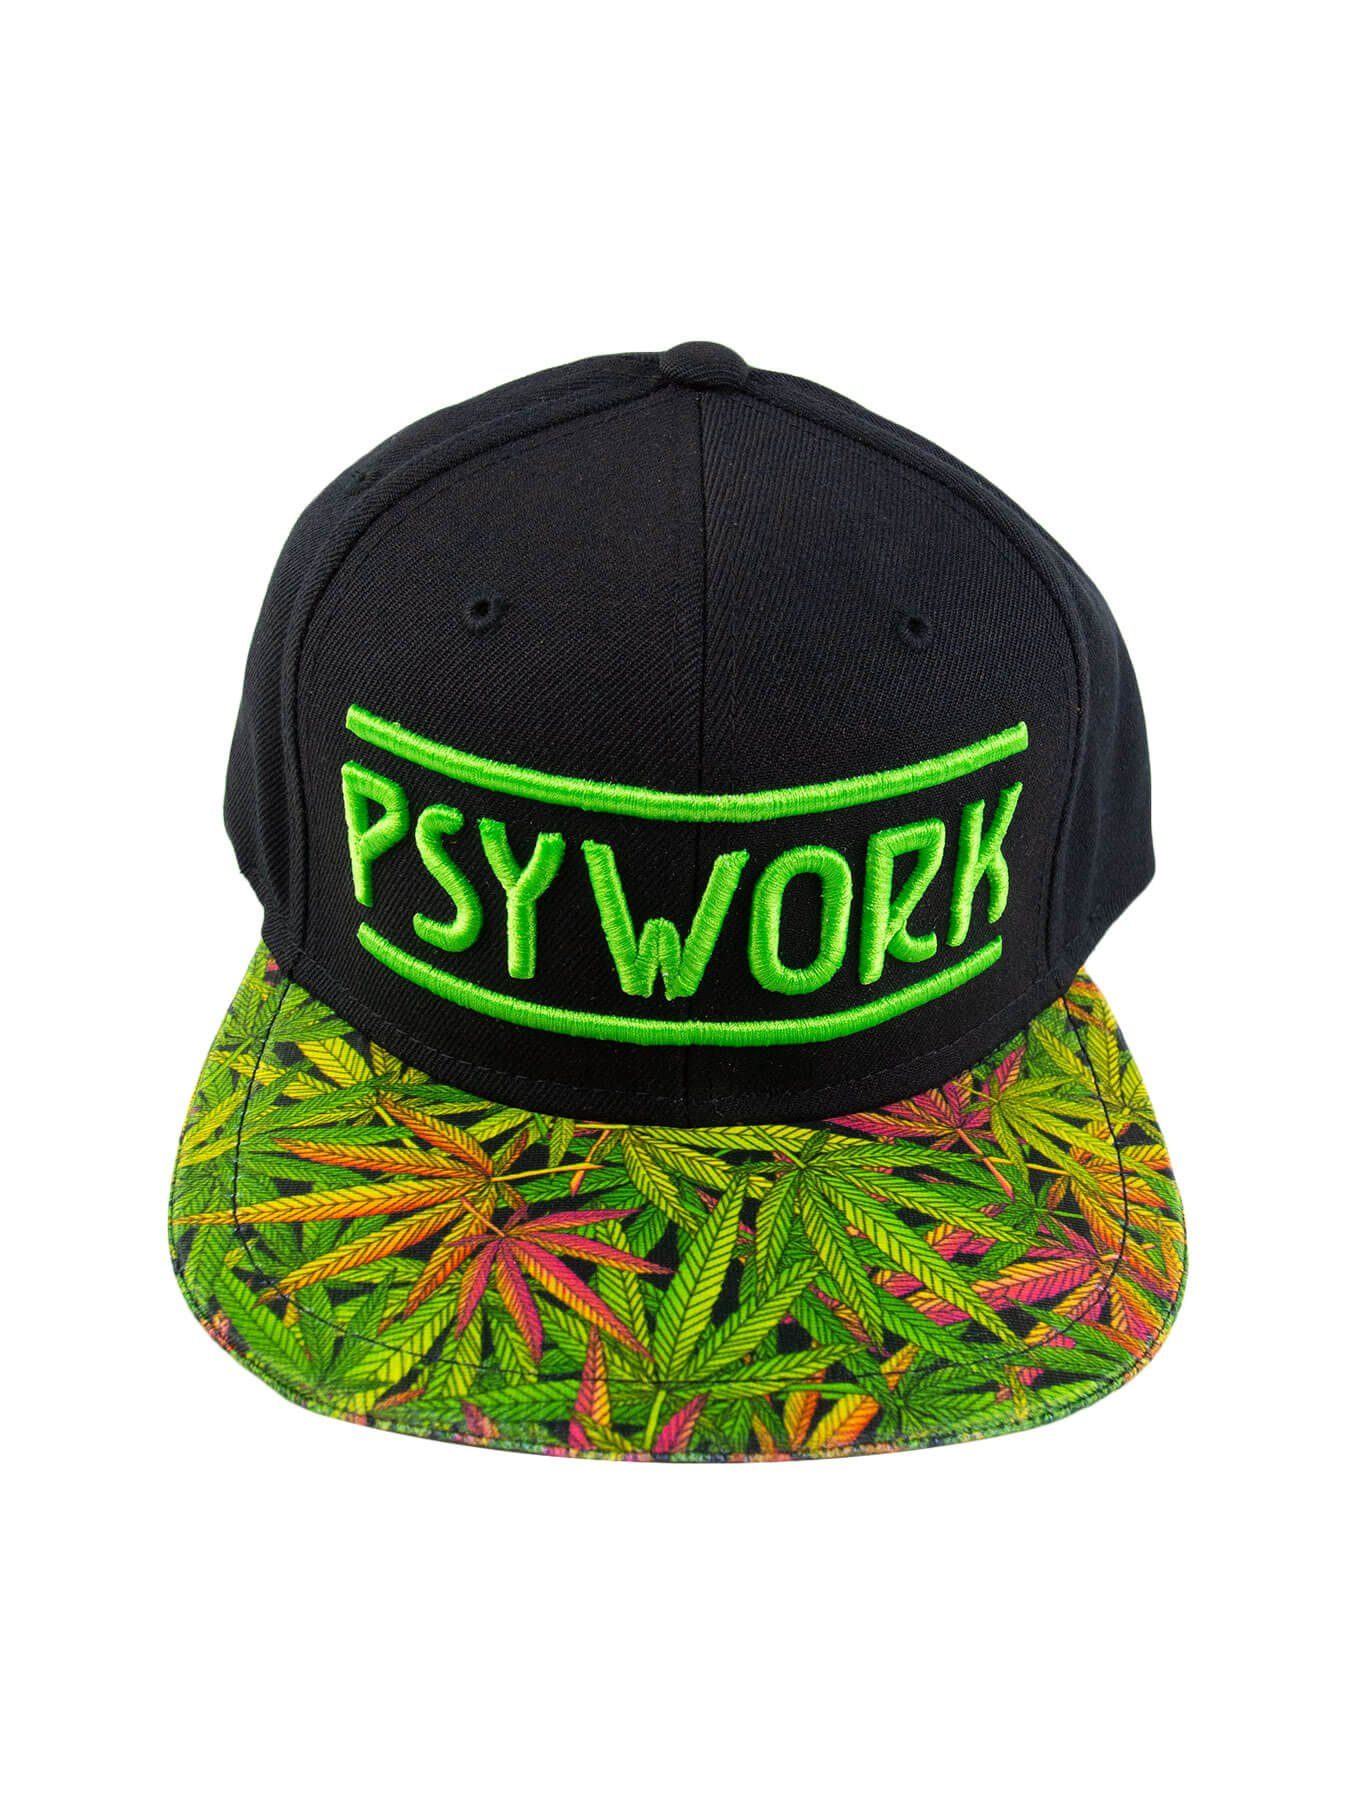 PSYWORK Snapback Cap Schwarzlicht Black Cap Neon "Funky Weed", Grün UV-aktiv, leuchtet unter Schwarzlicht